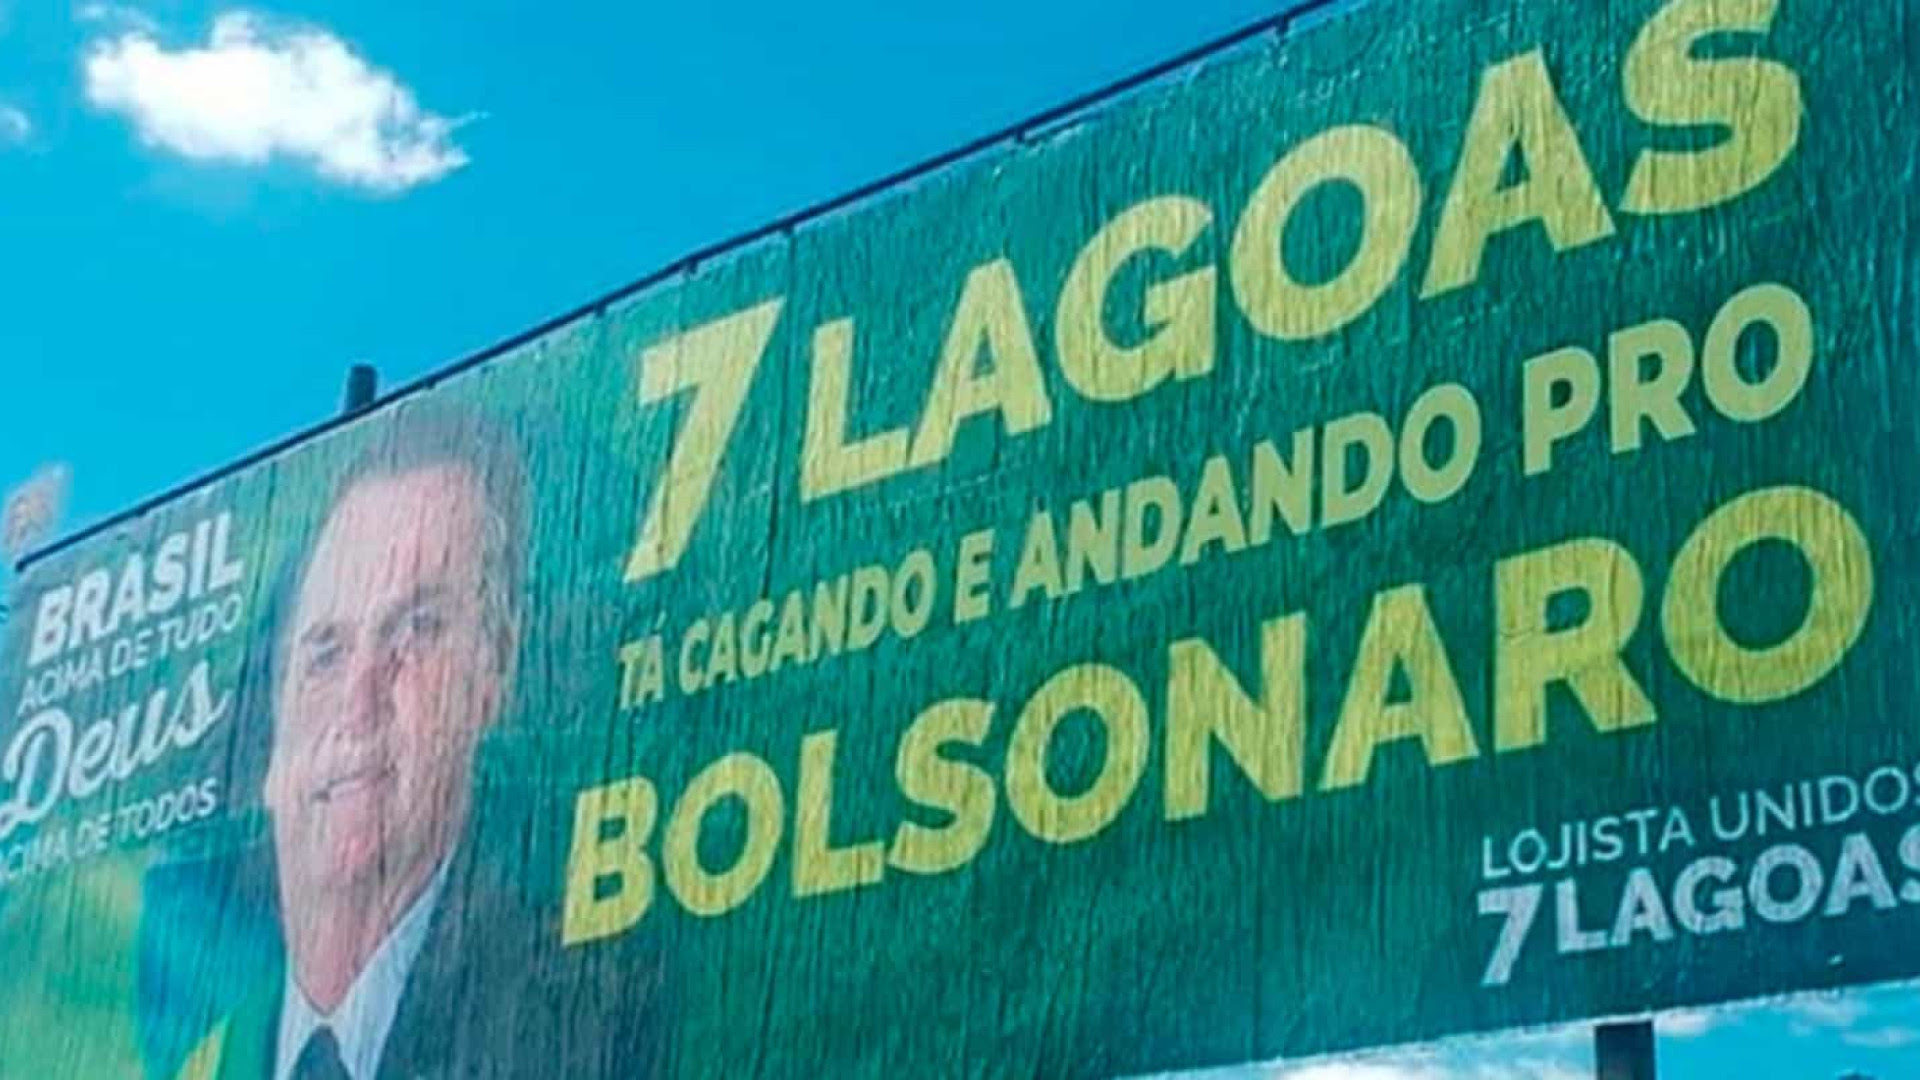 A guerra dos outdoors pró e contra Bolsonaro